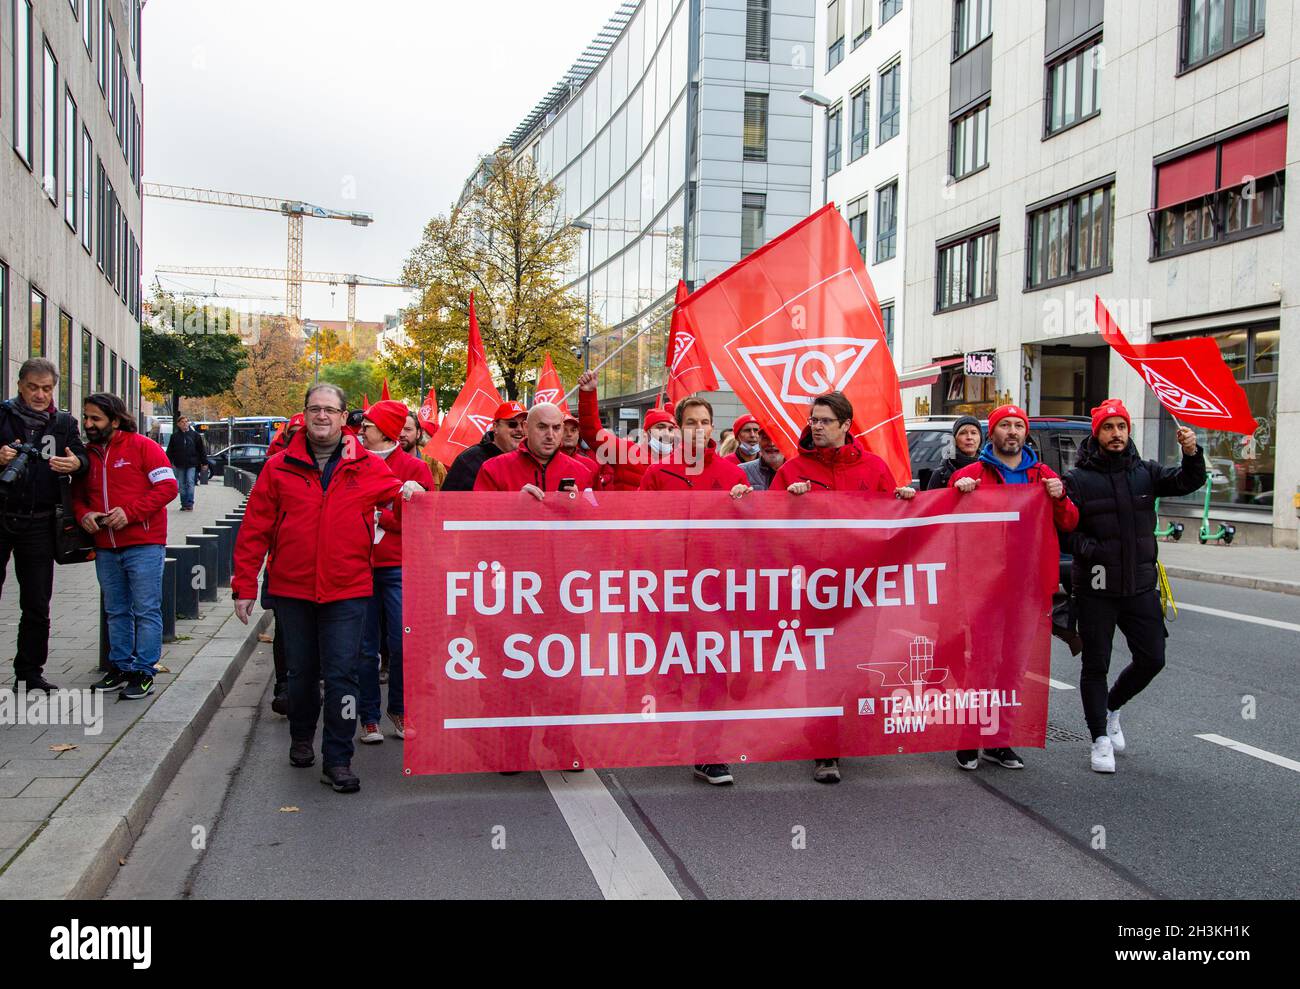 Am 29. Oktober 2021 sammeln sich ein paar wenige Hundert IG Metaller in München um von verschiedenen Fingern zu einer Kundgebung am Odeonsplatz zu demontieren. Sie forden von den Koalitionsverhandlern von SPD, Bündnis 90 / die Grünen und FDP, unter anderem Klimagerechtigkeit, faire Löhne, ein Ende der Schuldenbresse und keine Flexibilisierung der Arbeitszeiten. - am 29. Oktober 2021 versammelten sich einige Hundert Gewerkschafter der IG Metall in München, um vor der Fragestunde von CSU, SPD, Grünen und FDP zu protestieren. Sie fordern Klimagerechtigkeit, faire Löhne, ein Ende der Schuldenbremse und kein Fle Stockfoto